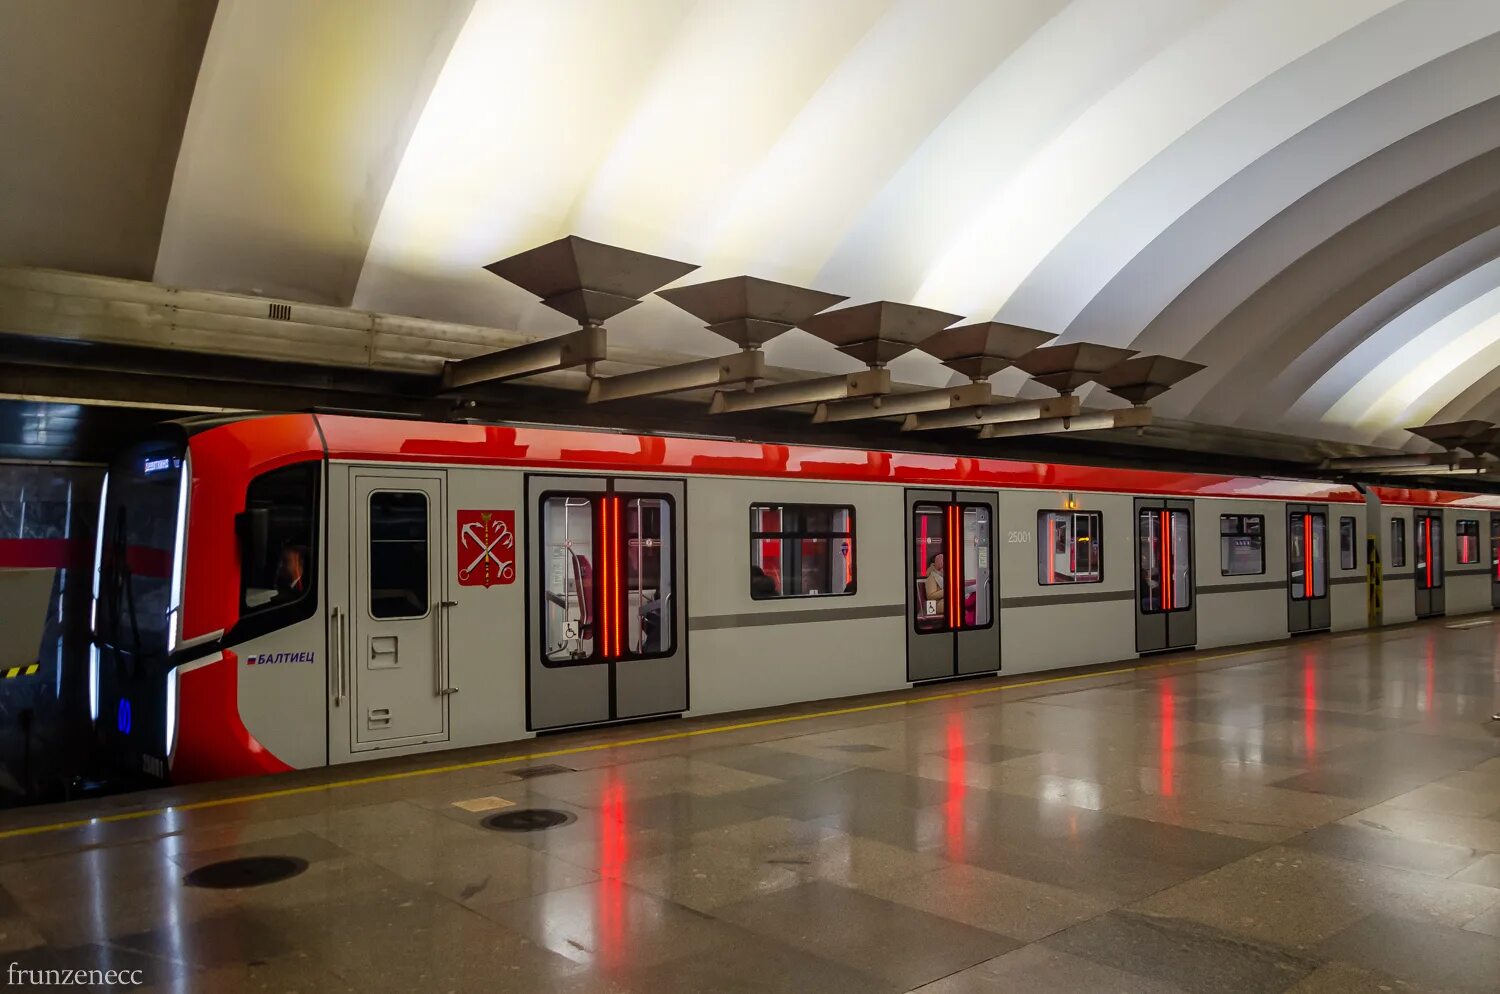 81-725 Балтиец. Вагоны метро Балтиец Санкт-Петербург. Вагон Балтиец метро СПБ. Балтиец вагон 81-725.